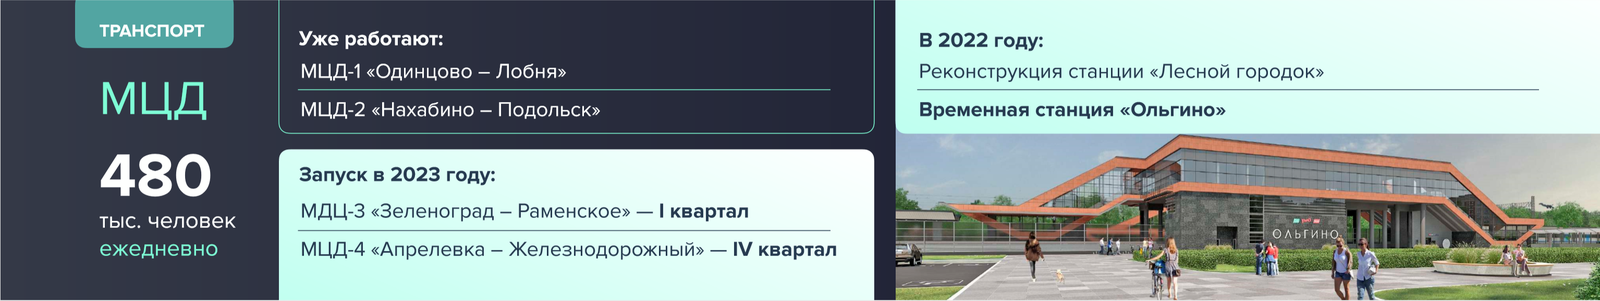 Андрей Воробьев губернатор московской области - Автобусы, МЦД и шоссе. Как развивается транспортная инфраструктура области